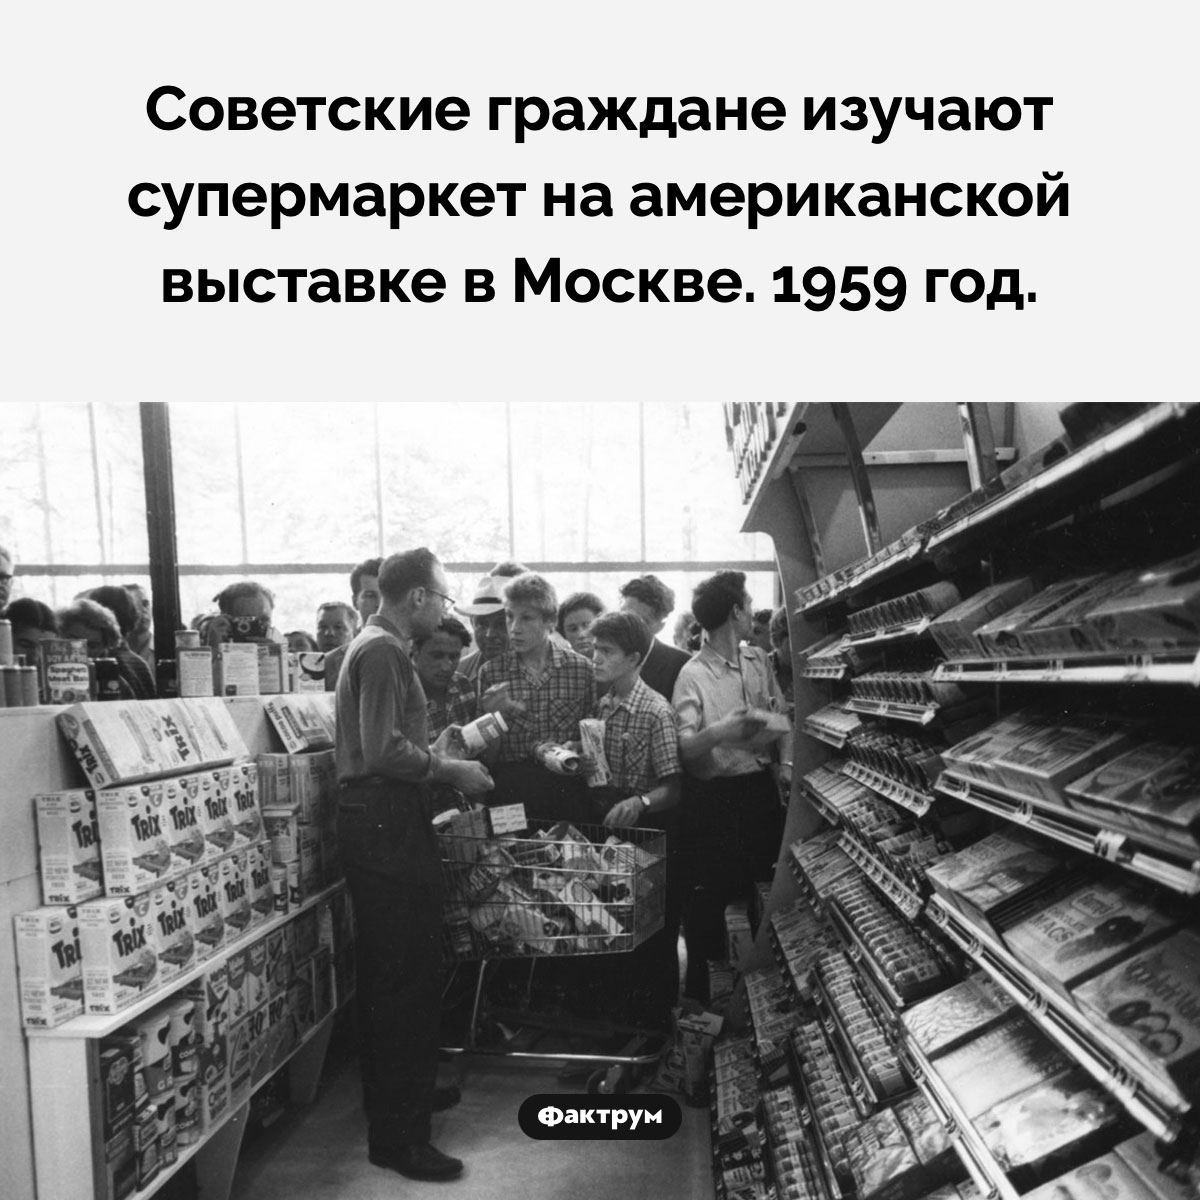 Американский супермаркет в СССР. Советские граждане изучают супермаркет на американской выставке в Москве. 1959 год.